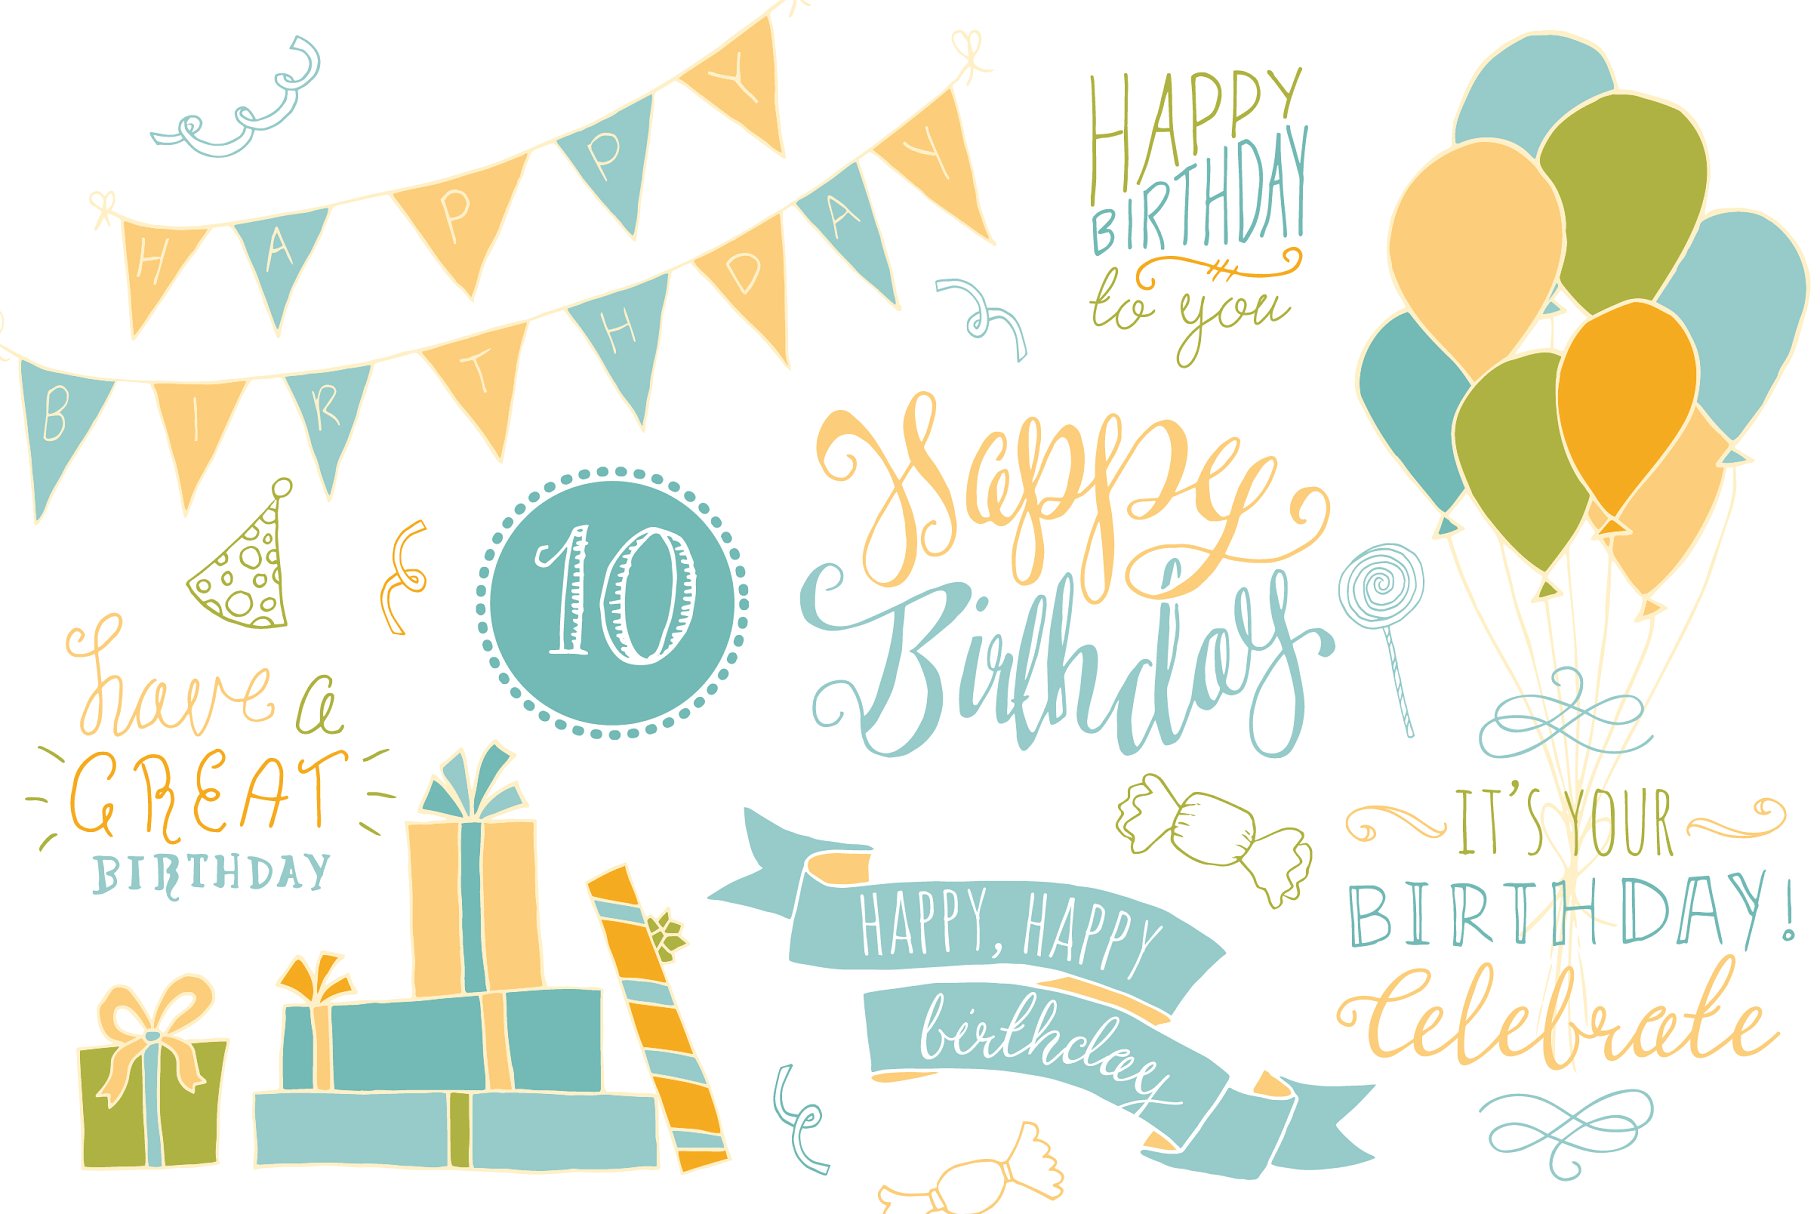 生日聚会主题装饰物料设计元素 Birthday Photoshop Overlays插图